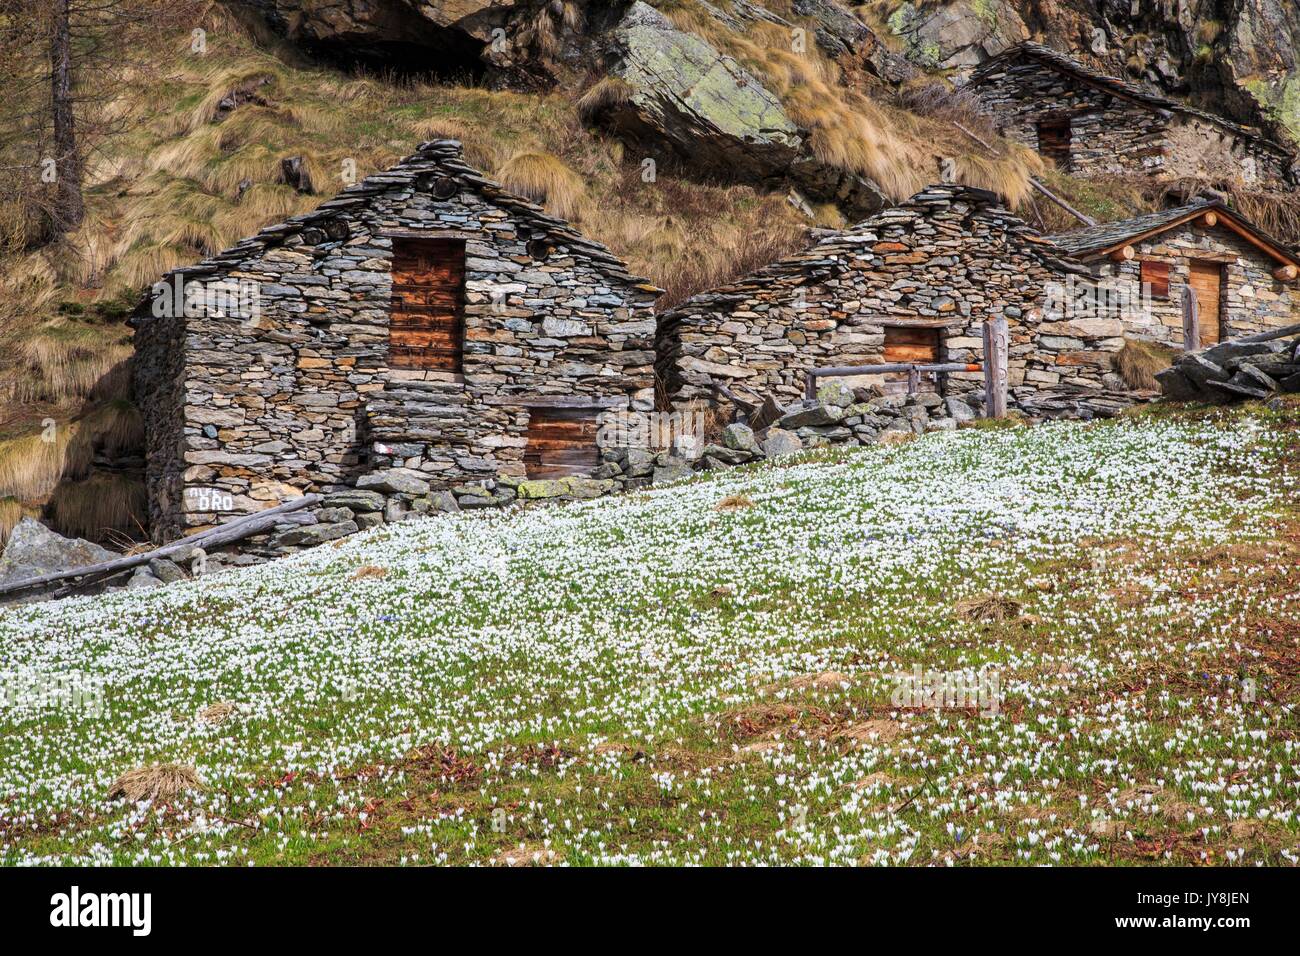 Blooming flowers and huts of Alpe dell' Oro. Alpe dell' Oro, Chiareggio, Valmalenco, Valtellima, Italy. Stock Photo